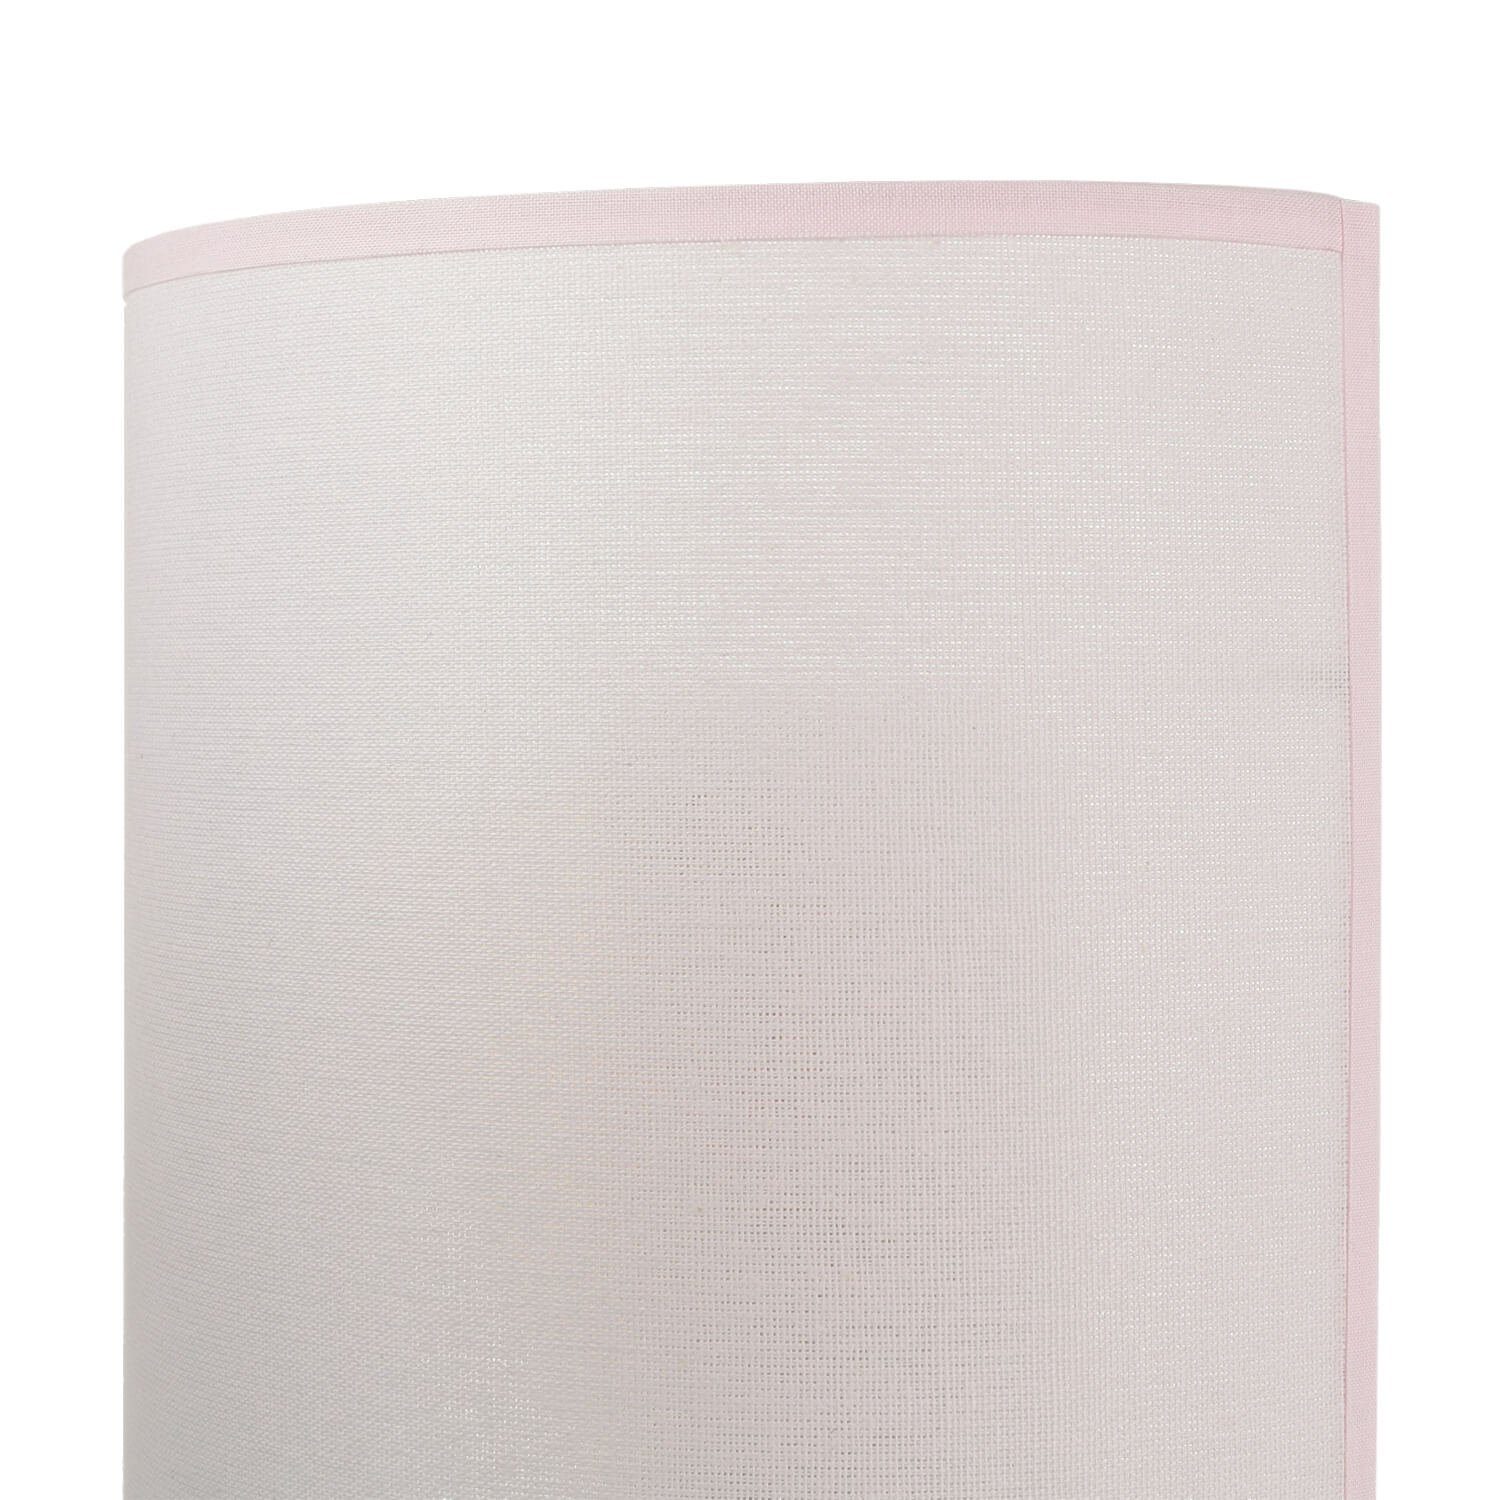 romantisch Loft Rosa Beleuchtung Stofflampe Wandleuchte Design Wandlampe ohne Leuchtmittel, Licht-Erlebnisse ALICE,